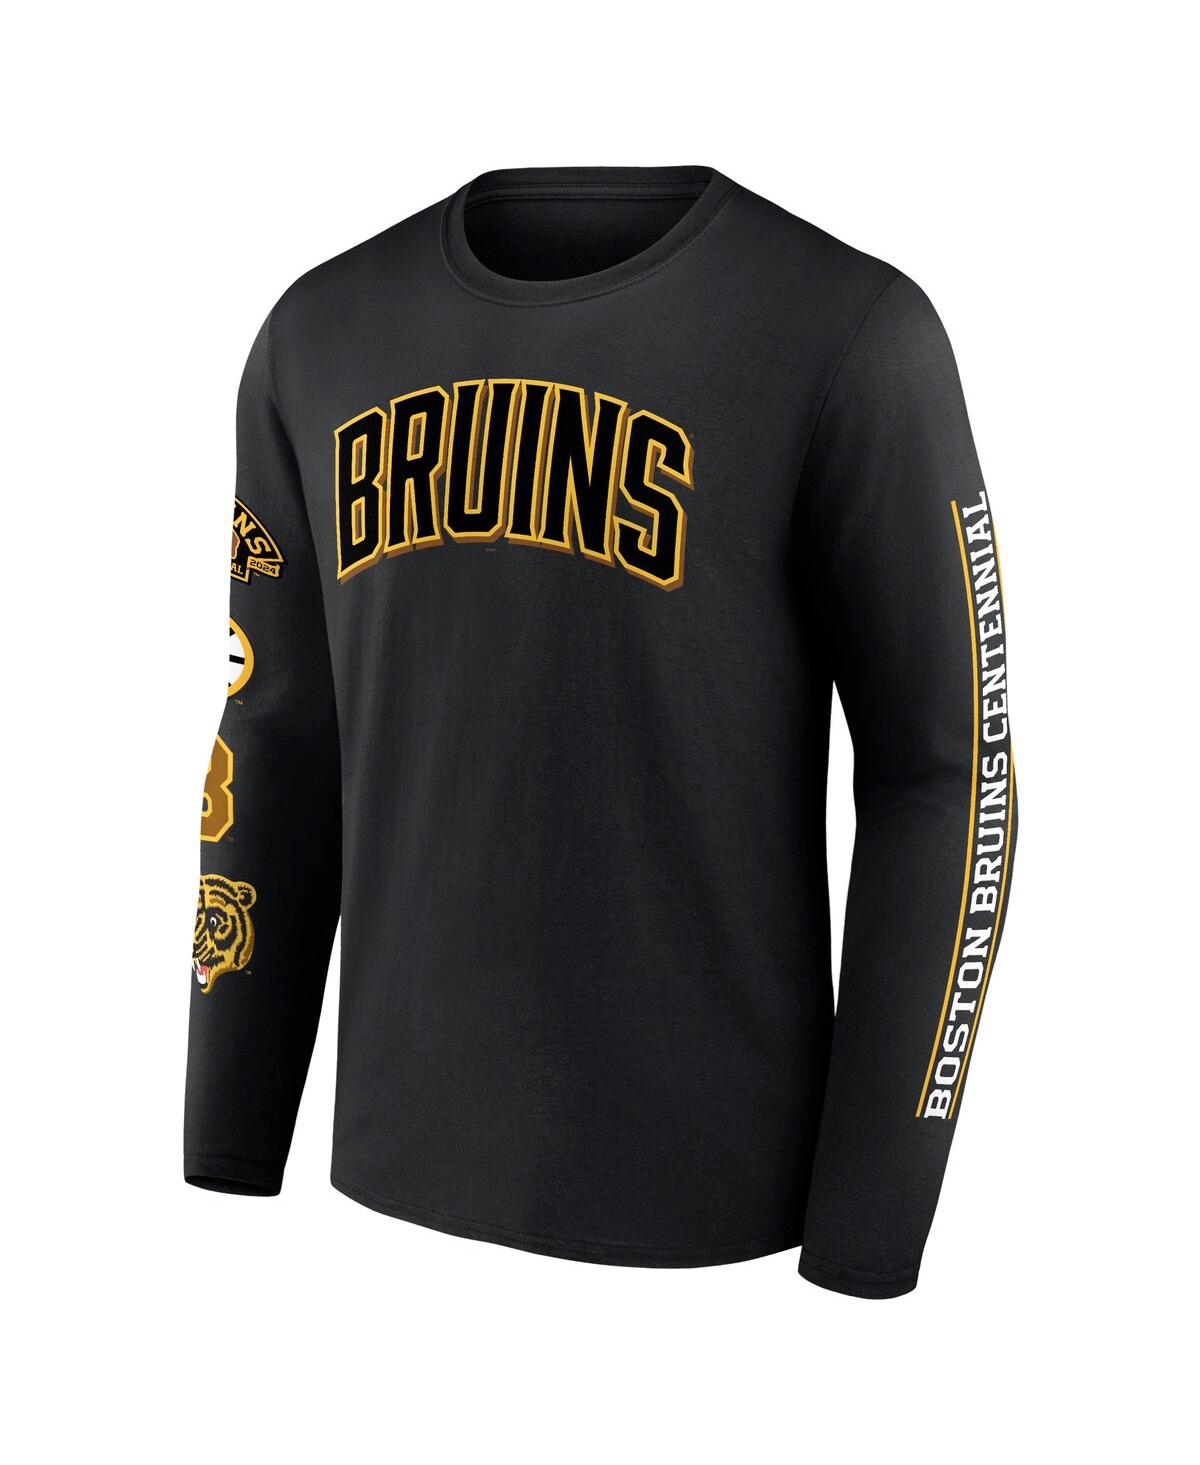 Shop Fanatics Men's  Black Distressed Boston Bruins Centennial Long Sleeve T-shirt